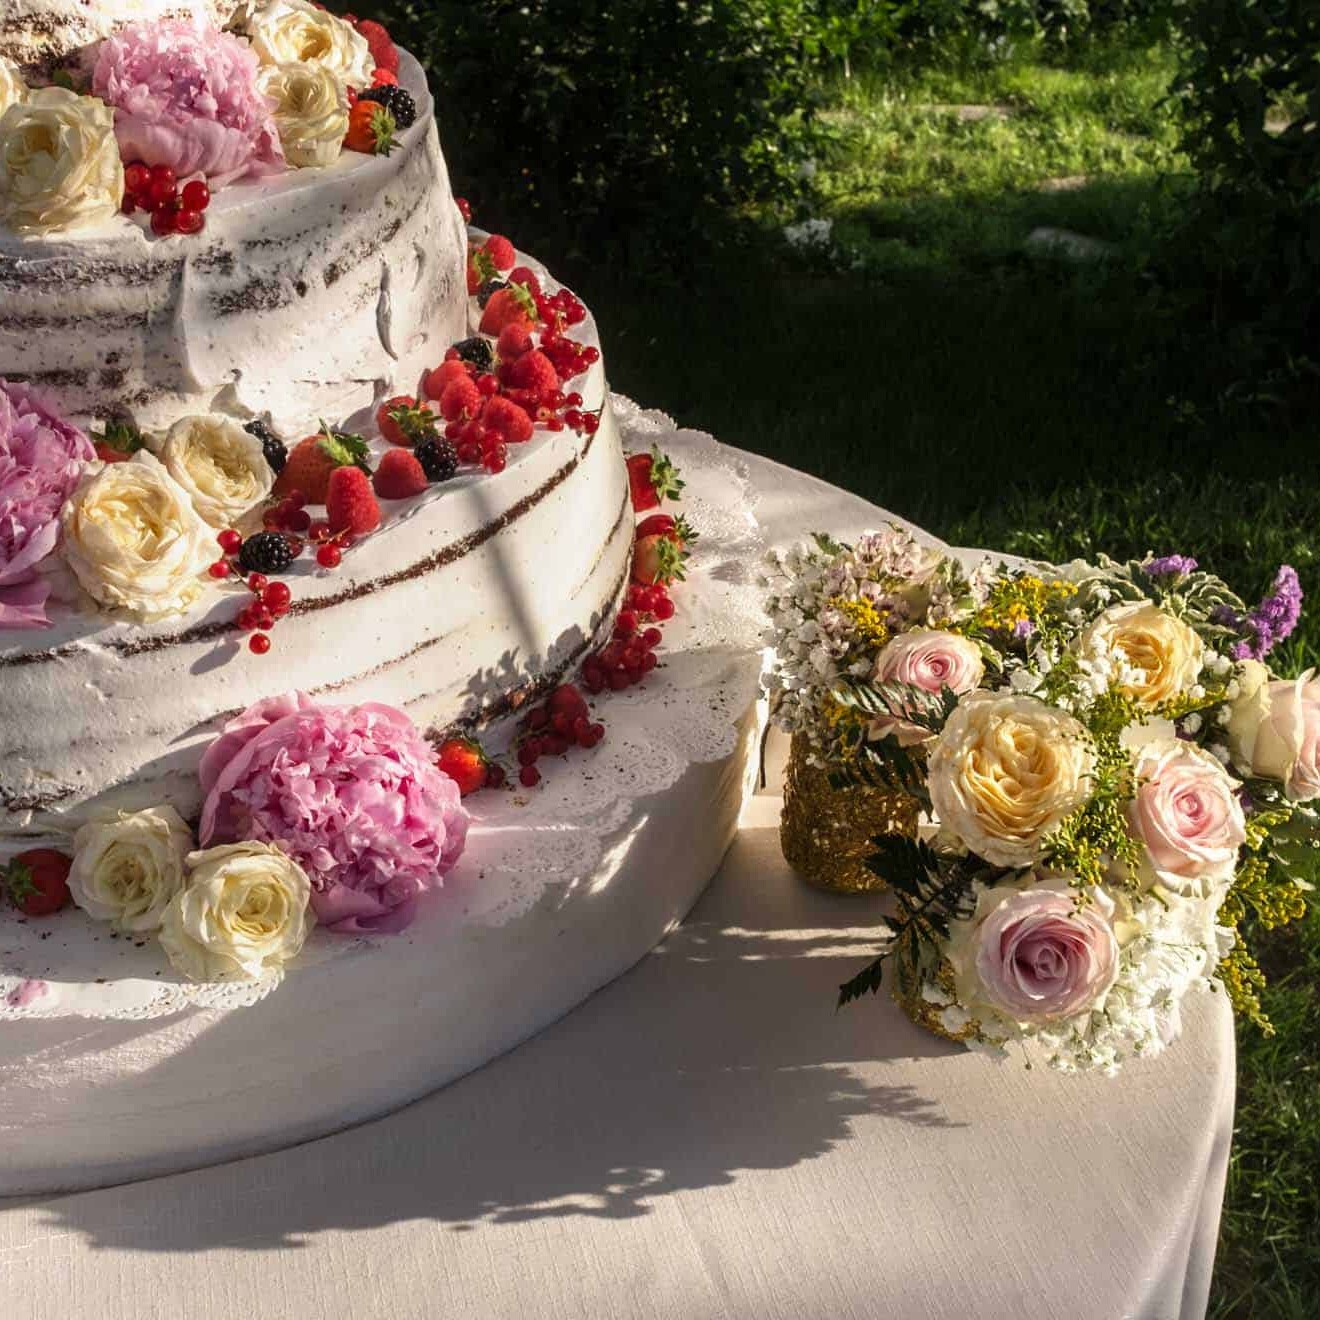 Dettaglio della torta nuziale e del bouquet di fiori